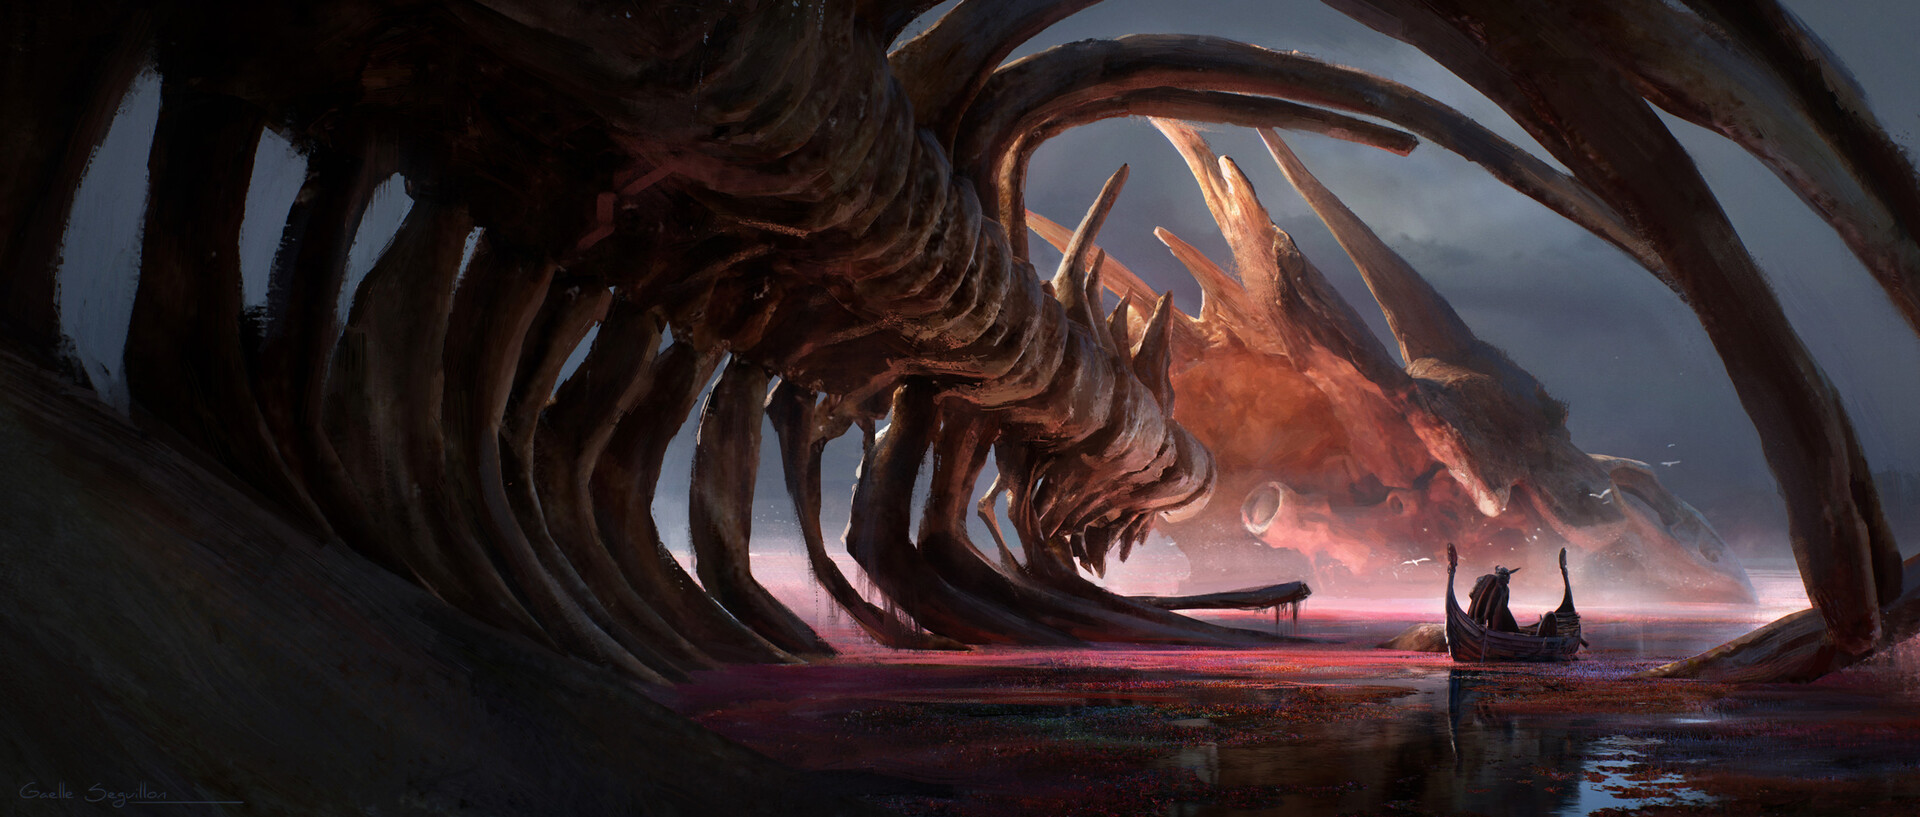 Dragonshrine by Gaëlle Seguillon